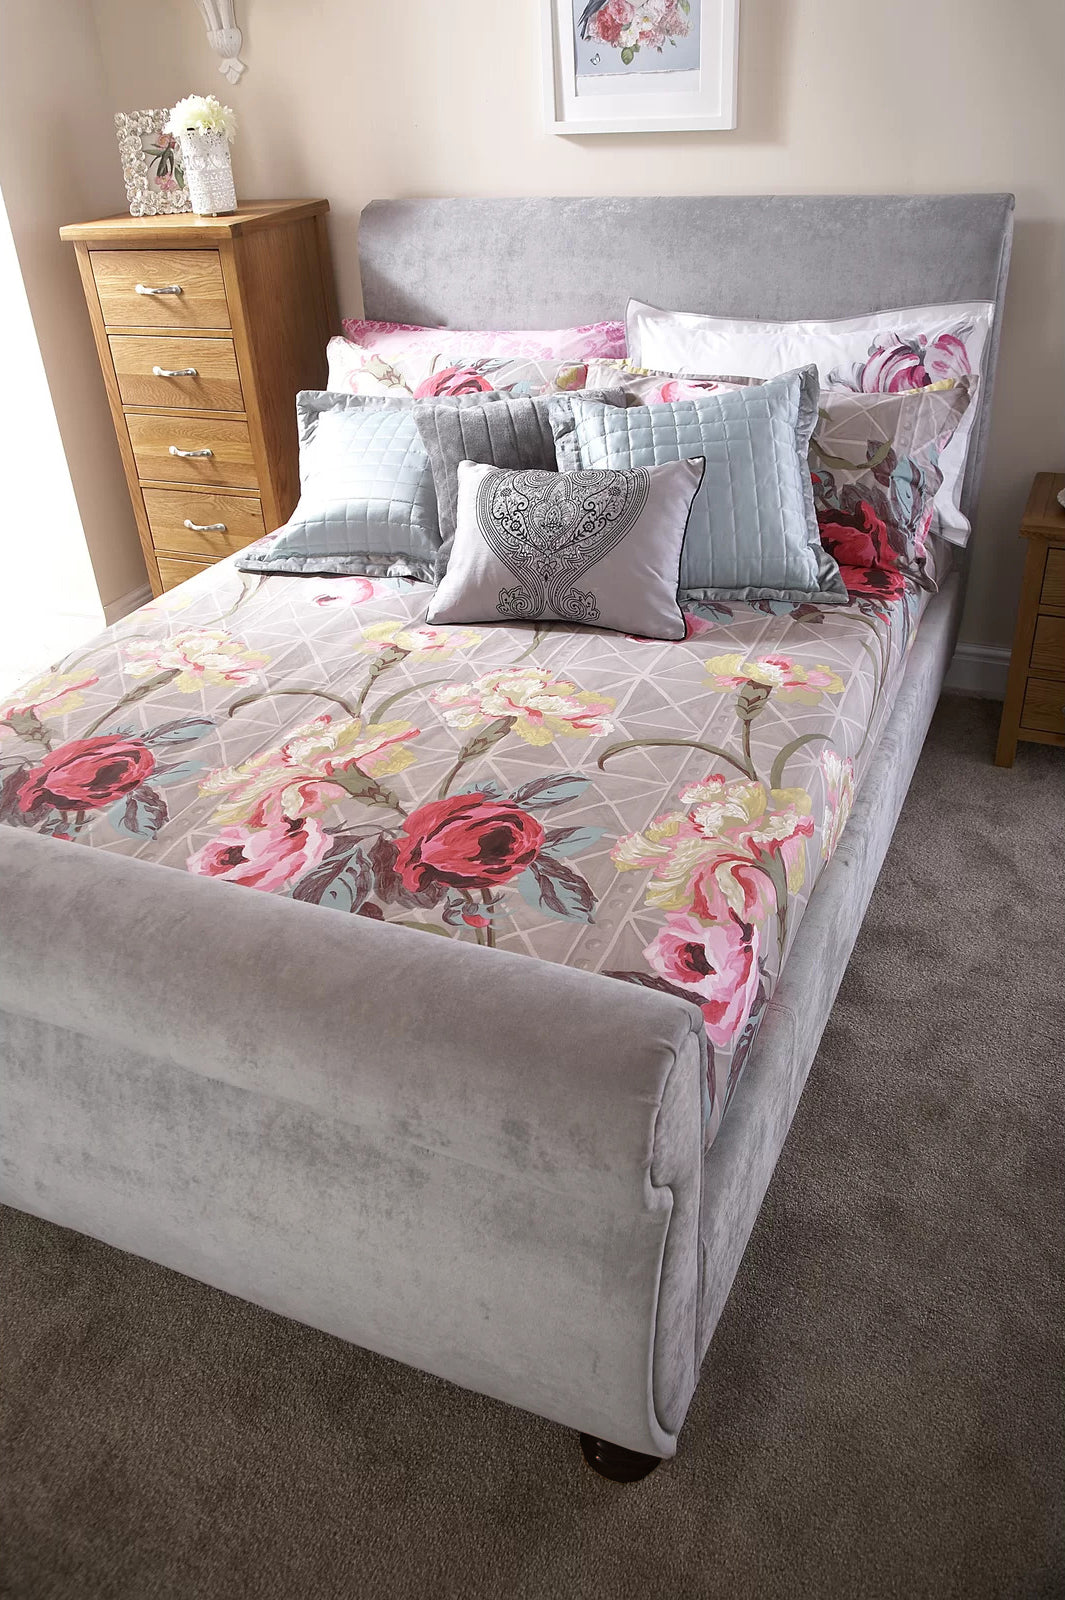 Doriya Plain Swan Sleigh Chesterfield Bed Frame